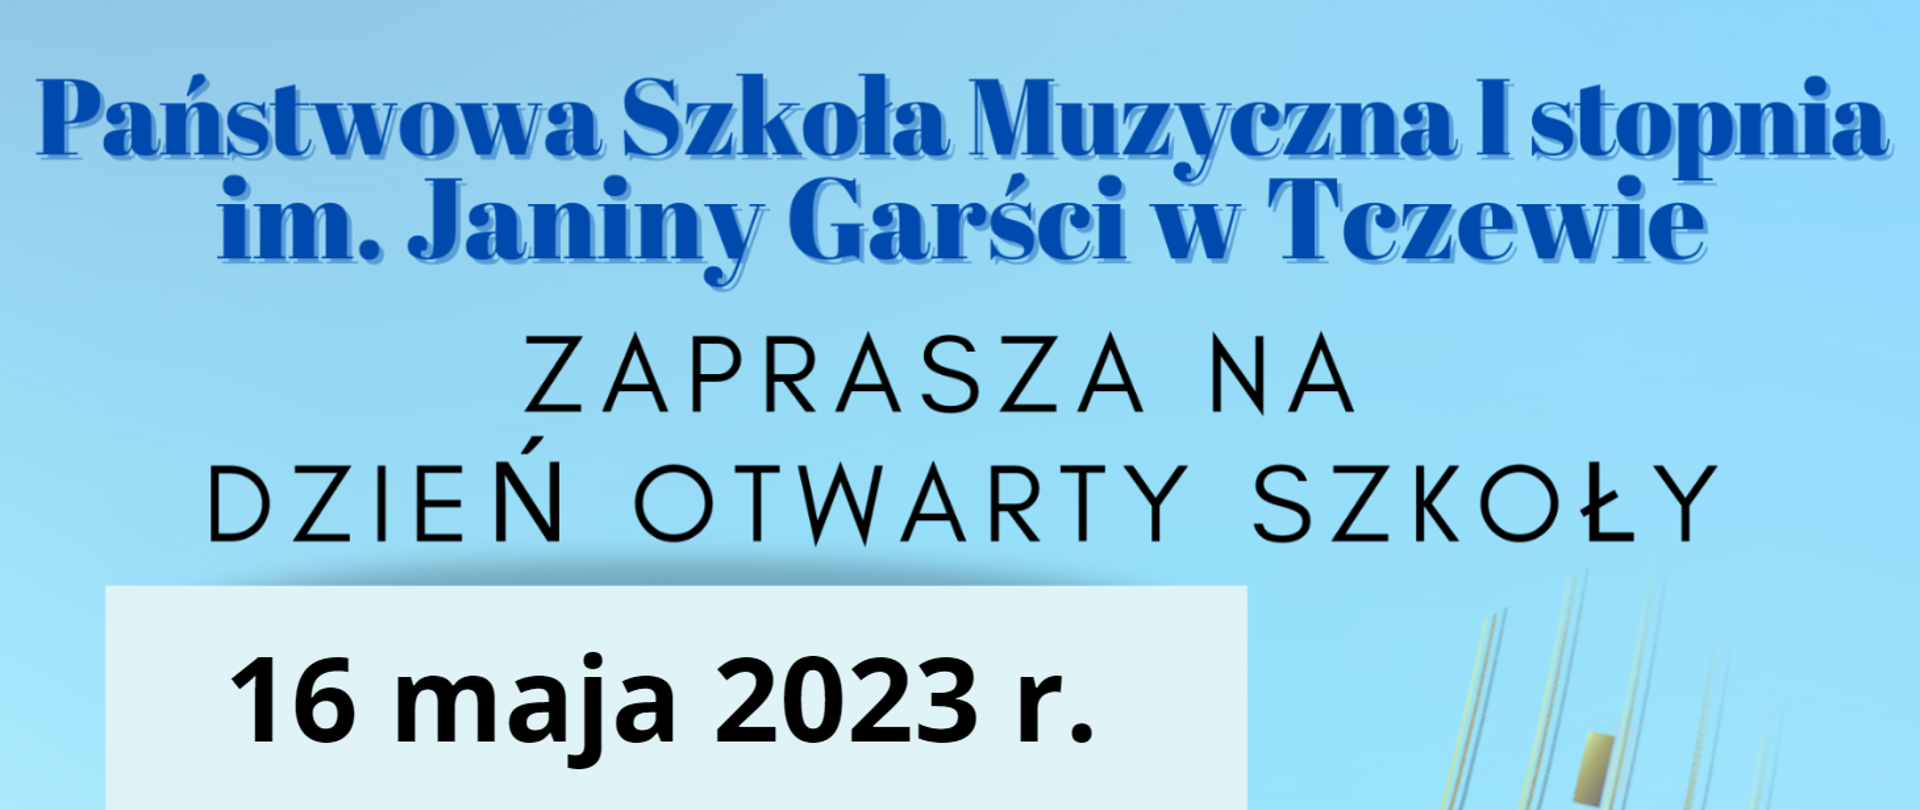 Na niebieskim tle napis: Państwowa Szkoła Muzyczna I stopnia im. Janiny Garści w Tczewie zaprasza na Dzień Otwarty Szkoły 16 maja 2023 r.